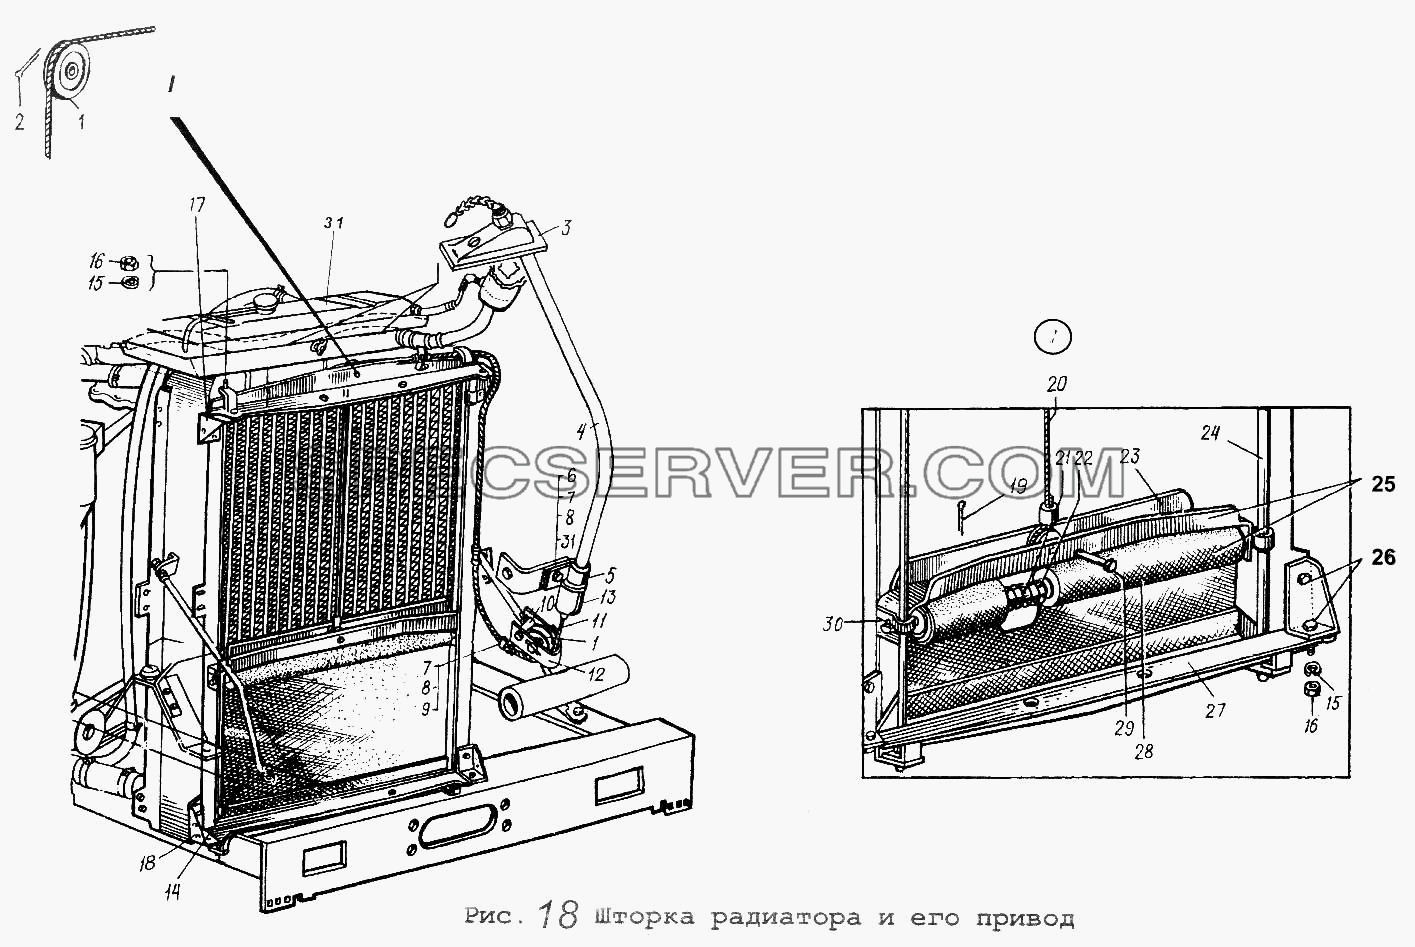 Шторка радиатора и его привод для МАЗ-54323 (список запасных частей)